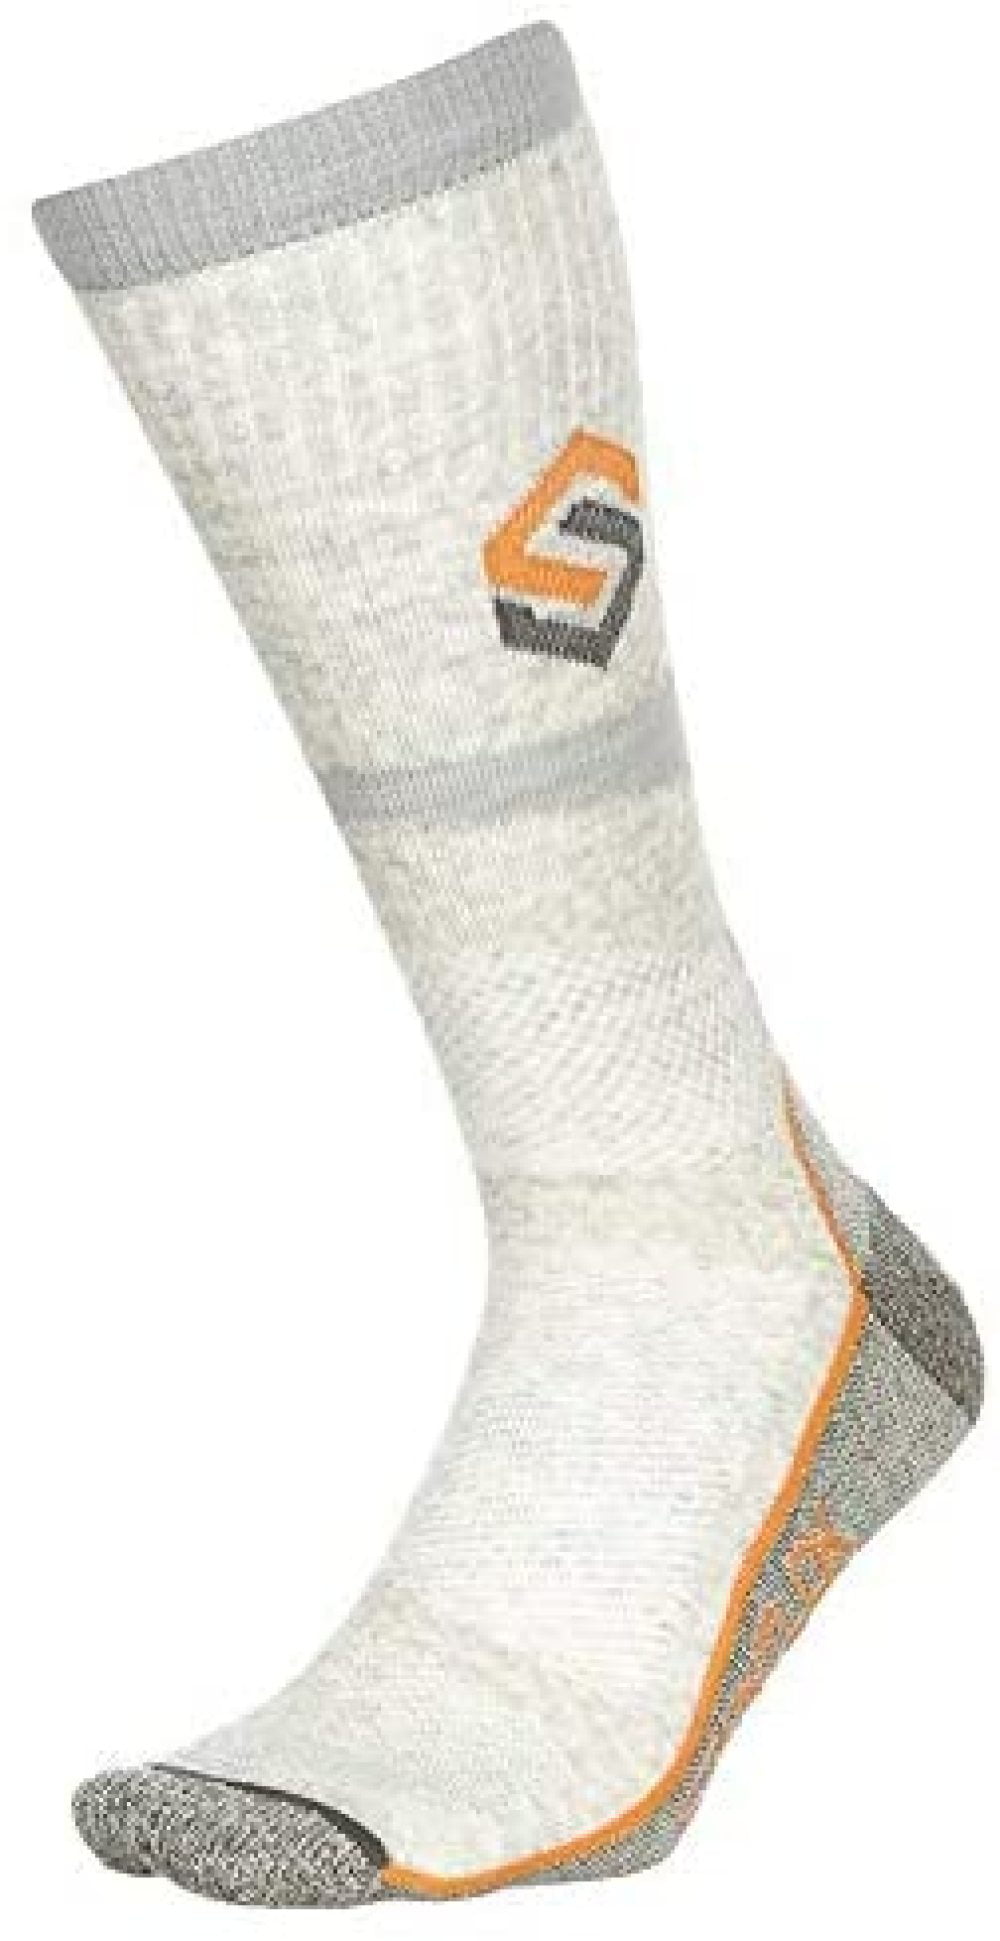 Scentlok Men's Everyday Sock Grey, Medium 